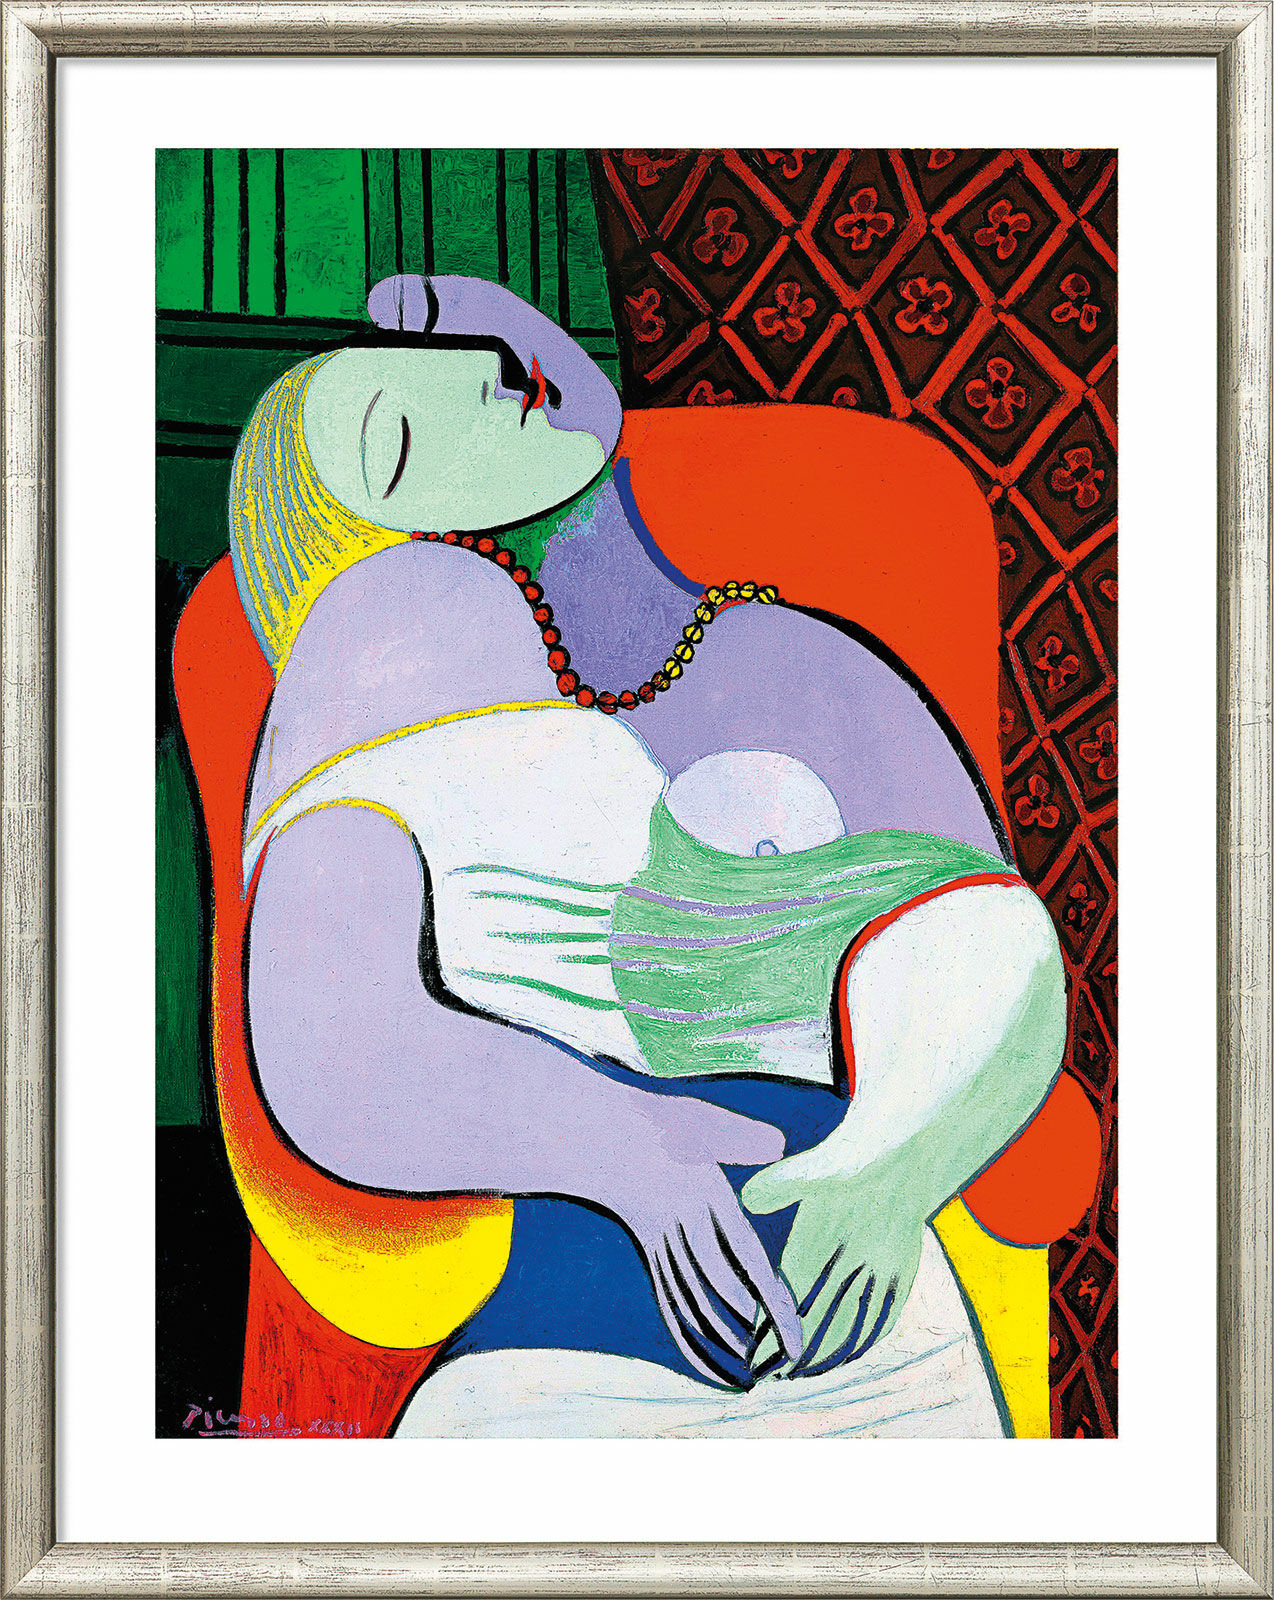 Beeld "Le Rêve - De droom" (1932), ingelijst von Pablo Picasso